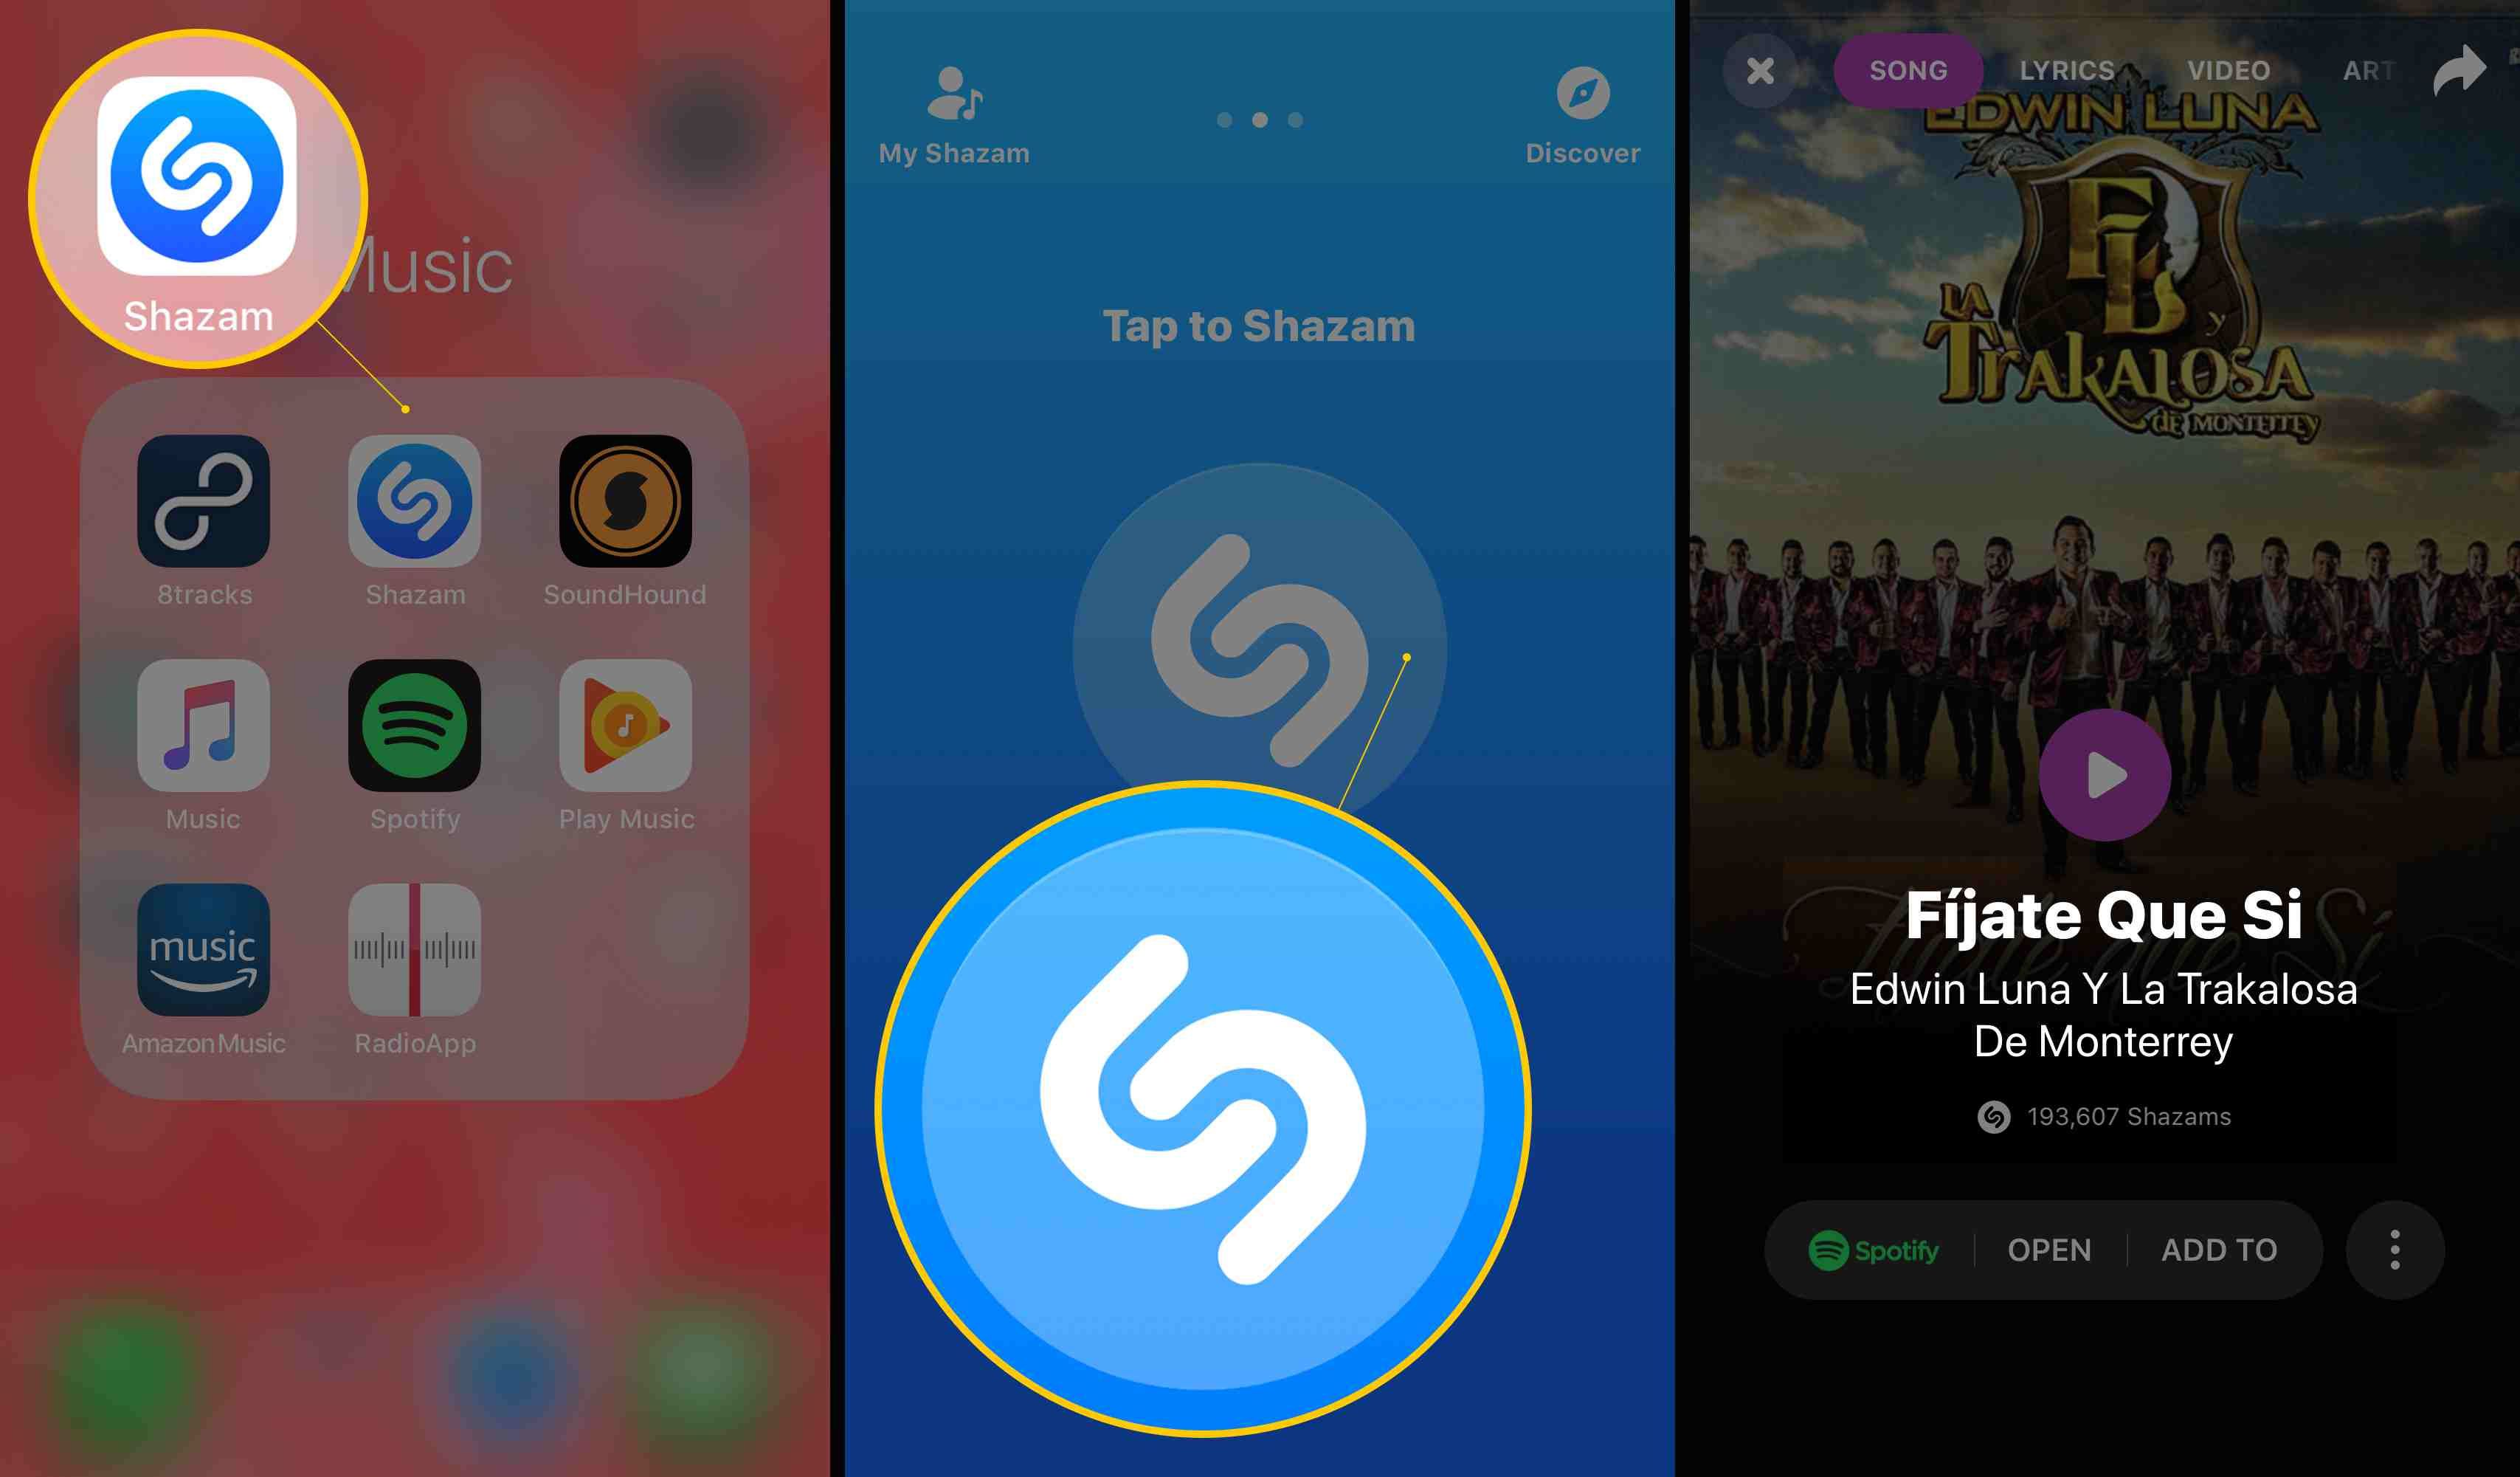 Три экрана iOS, показывающие значок Shazam, Tap to Shazam и найденную песню (Fijate Que Si)